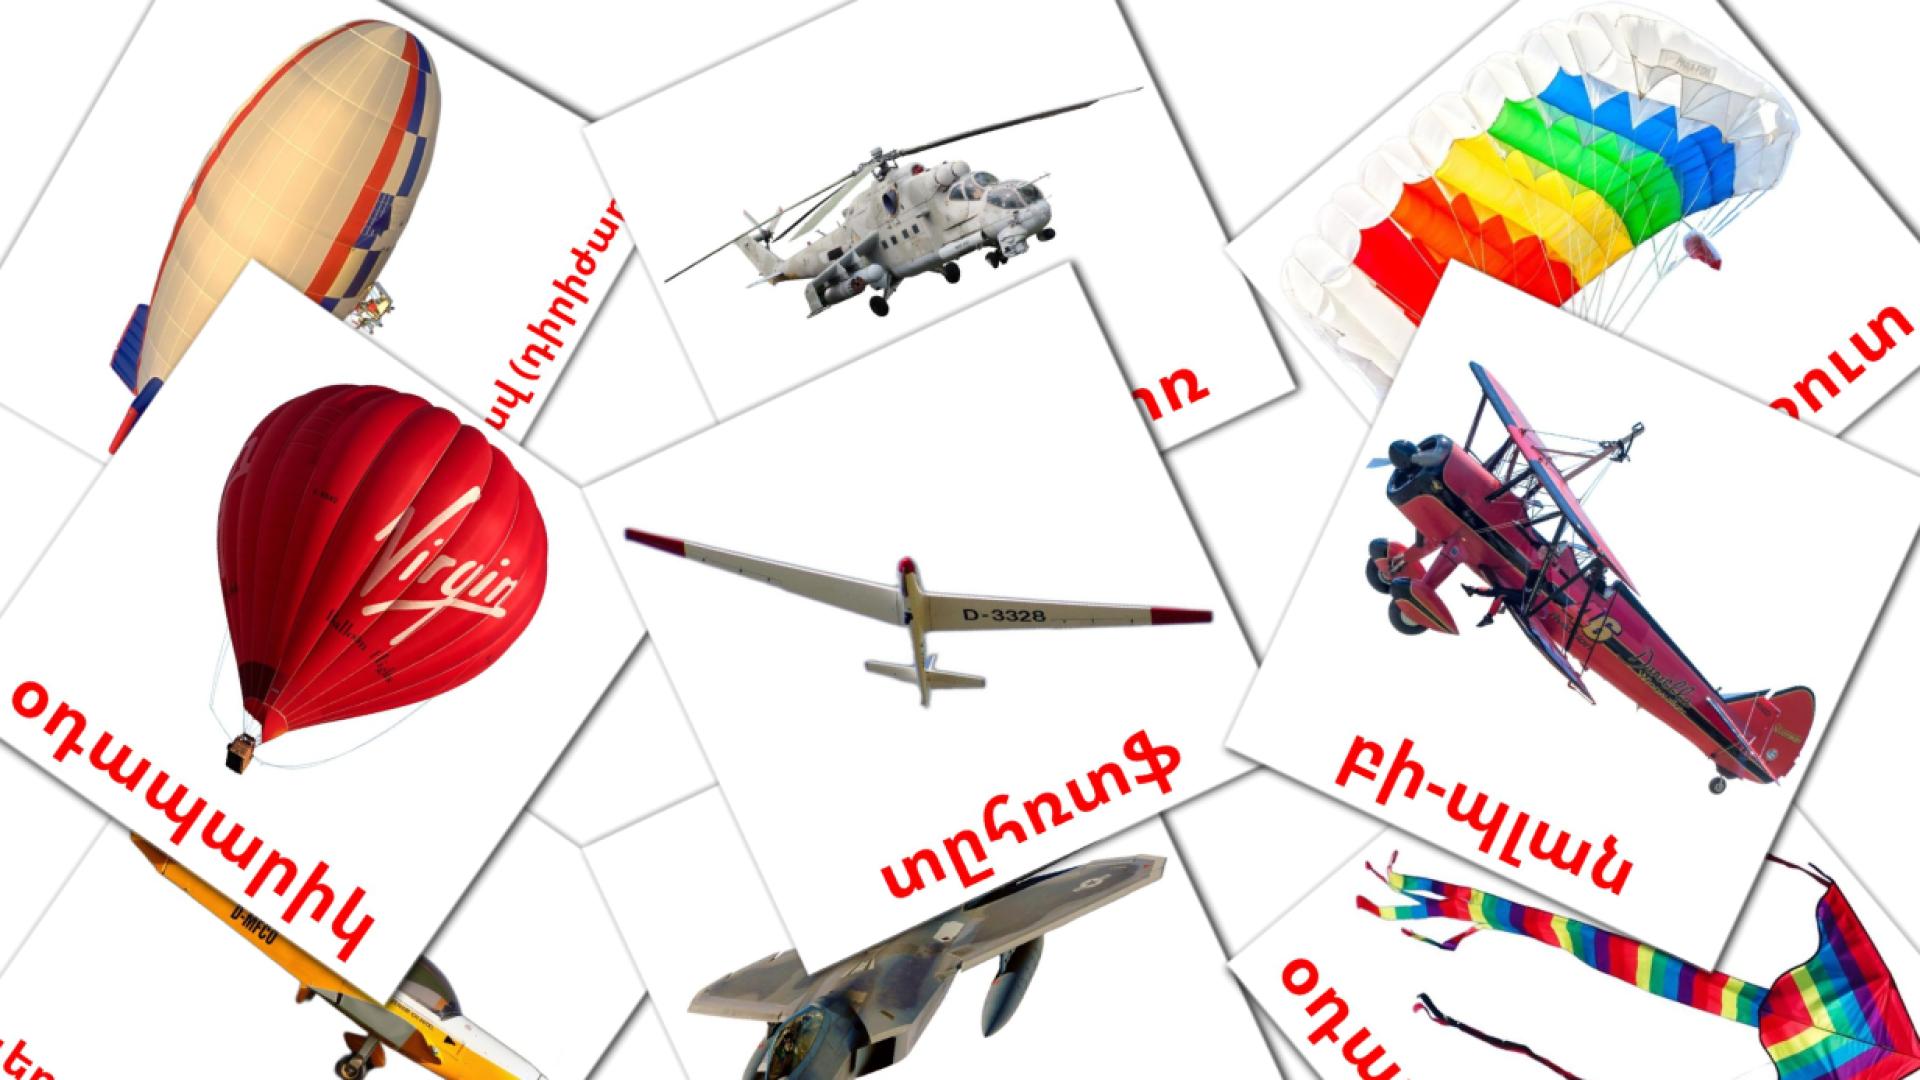 Lucht - armeensee woordenschatkaarten